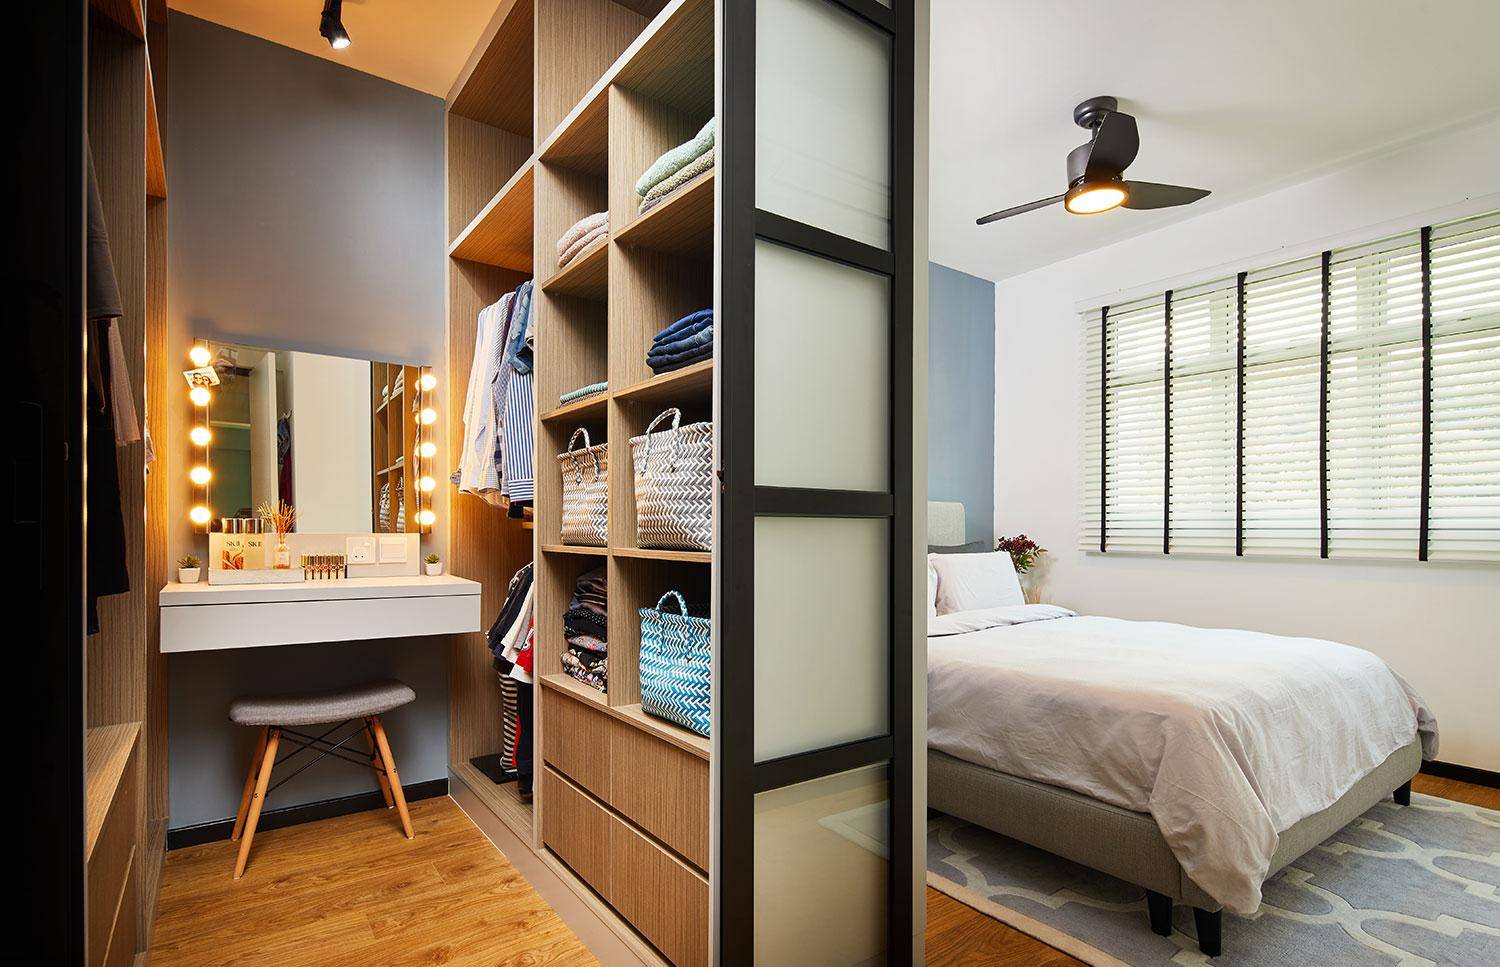 Гардеробная в спальне - 90 фото дизайнерских решений по оформлению интерьера спальни с гардеробной